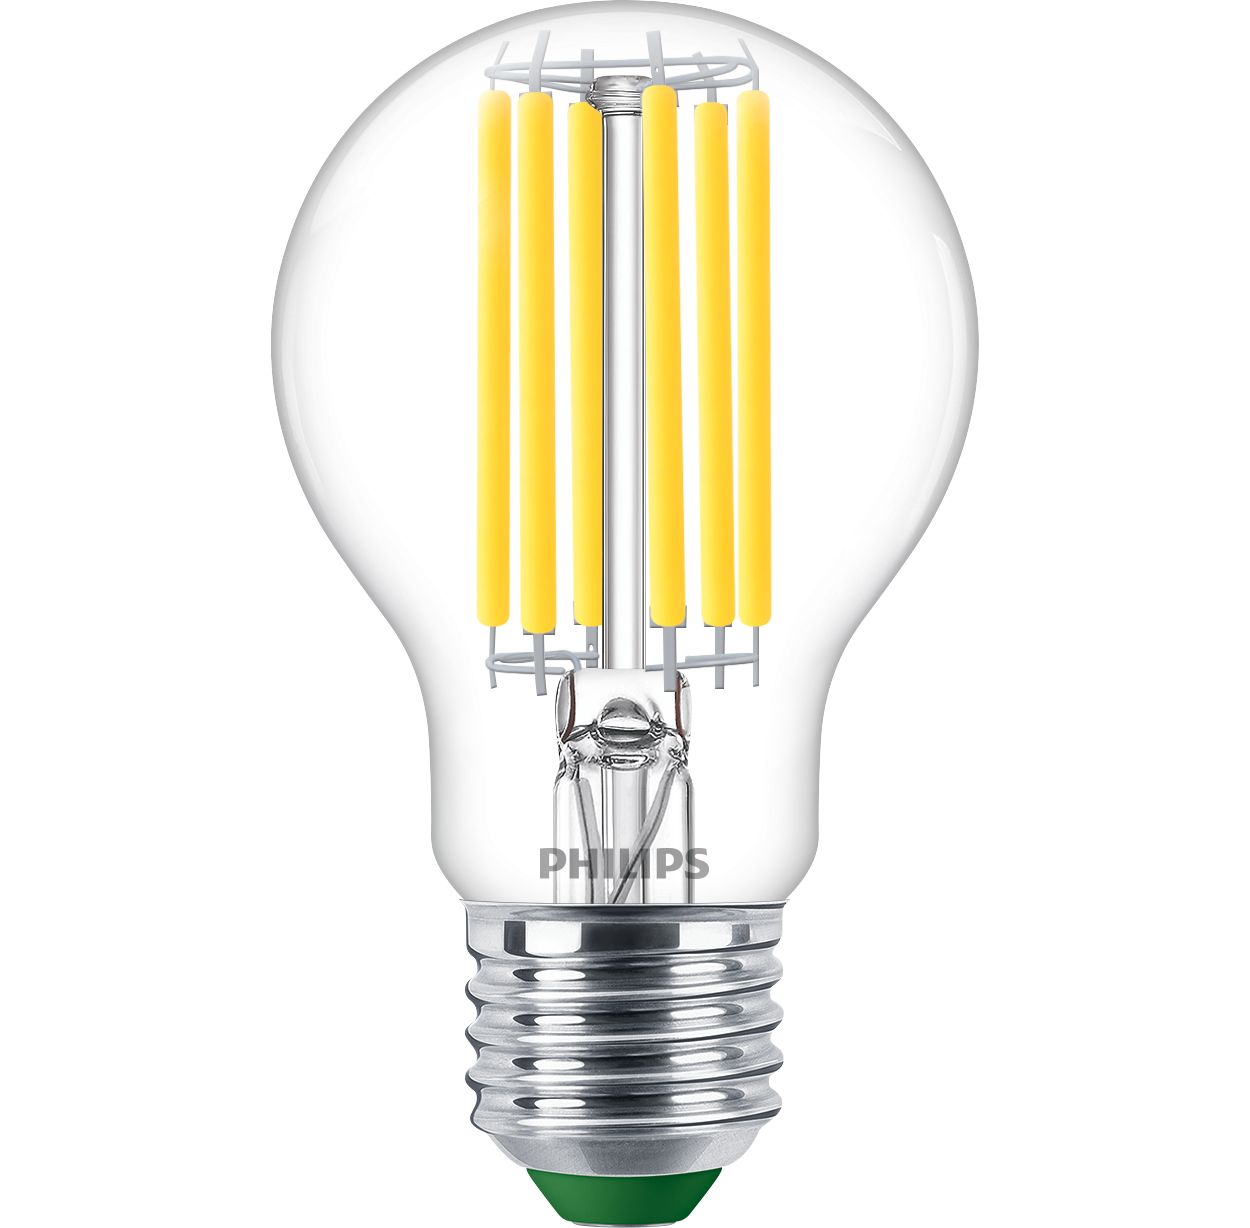 Svijetla LED rasvjeta odlične kvalitete svjetla